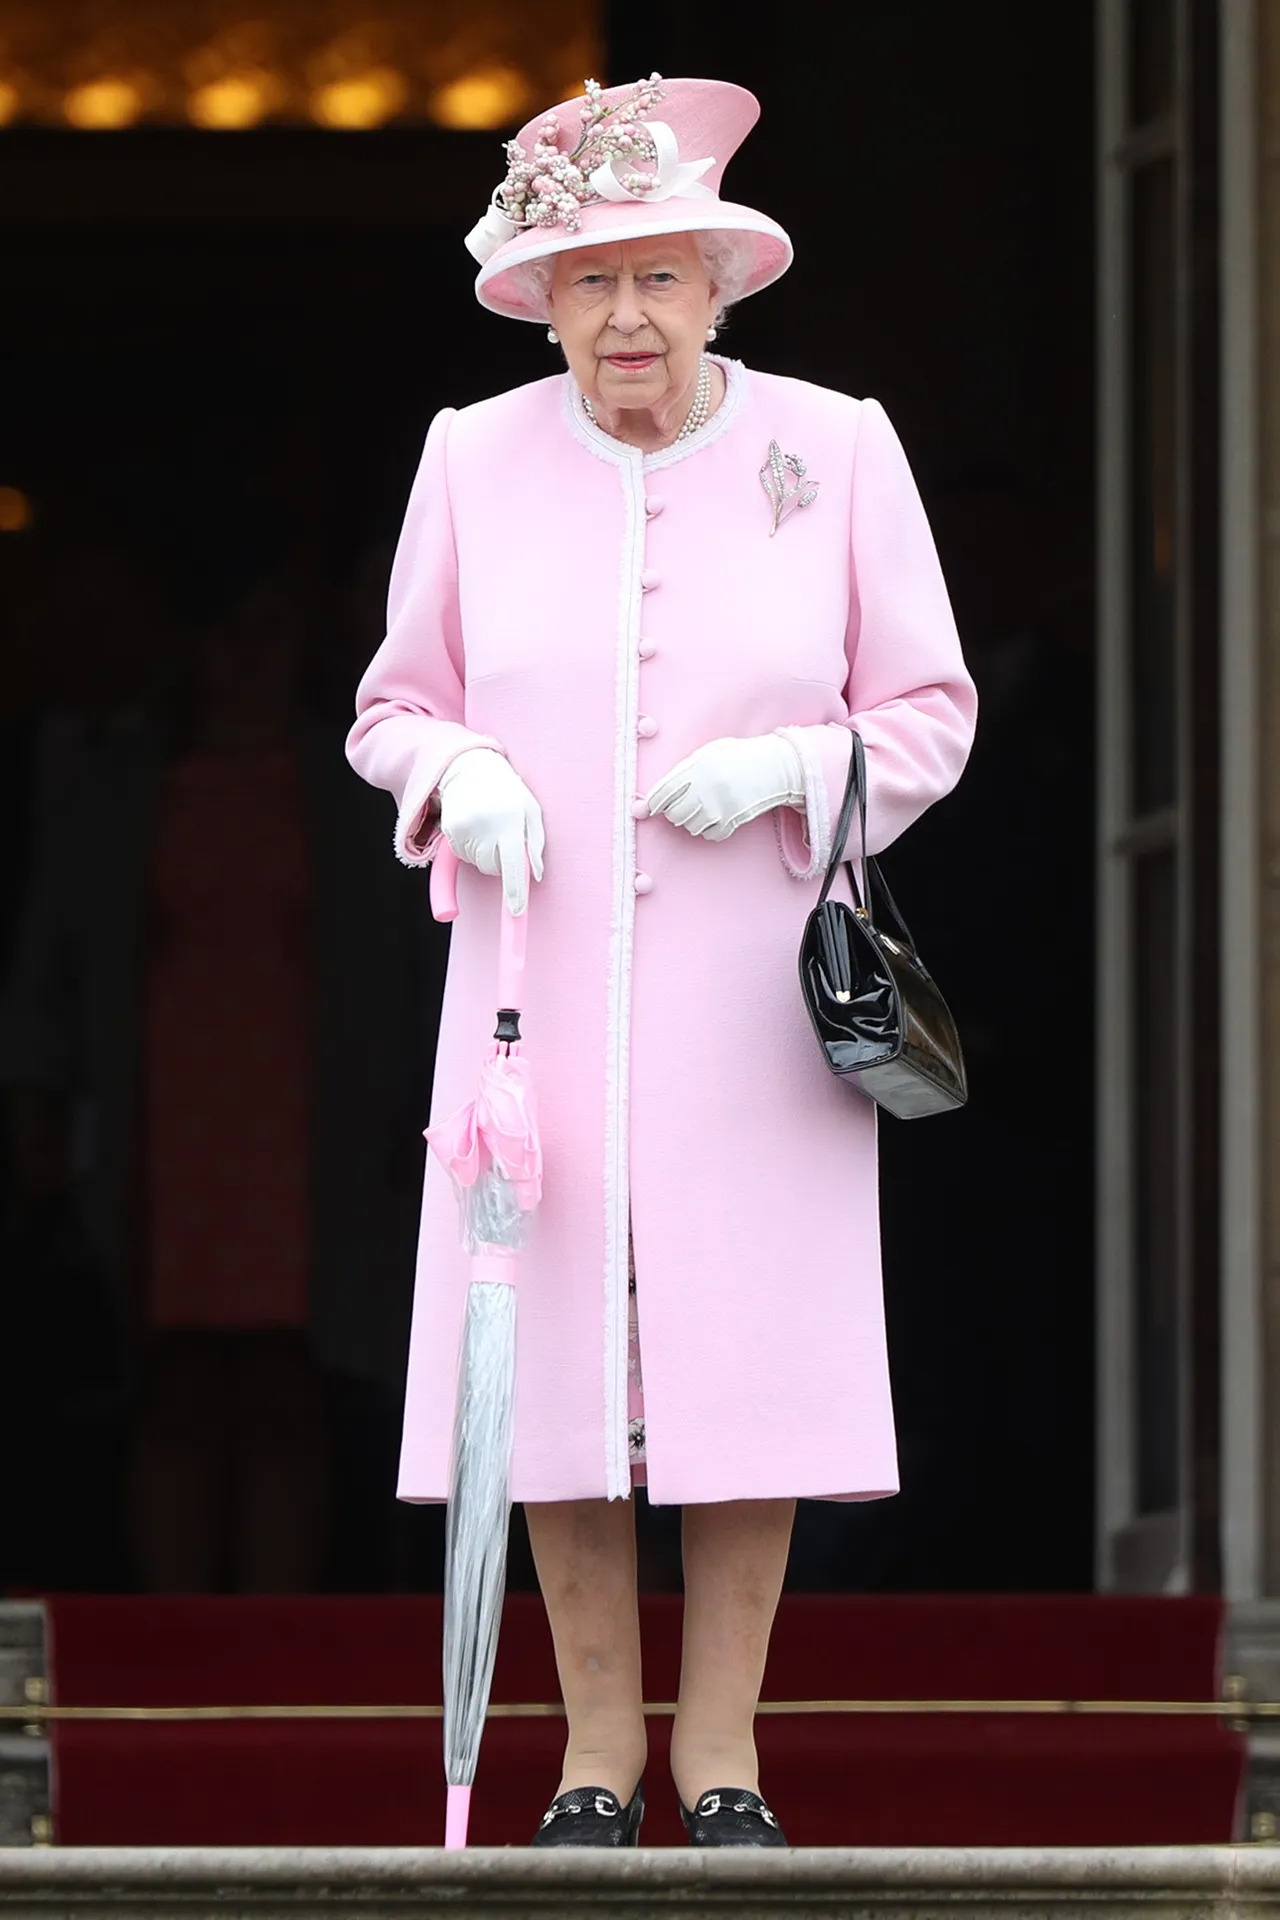 Nữ hoàng duyên dáng trong bộ đồ màu hồng khi tham dự bữa tiệc Royal Garden tại Cung điện Buckingham năm 2019